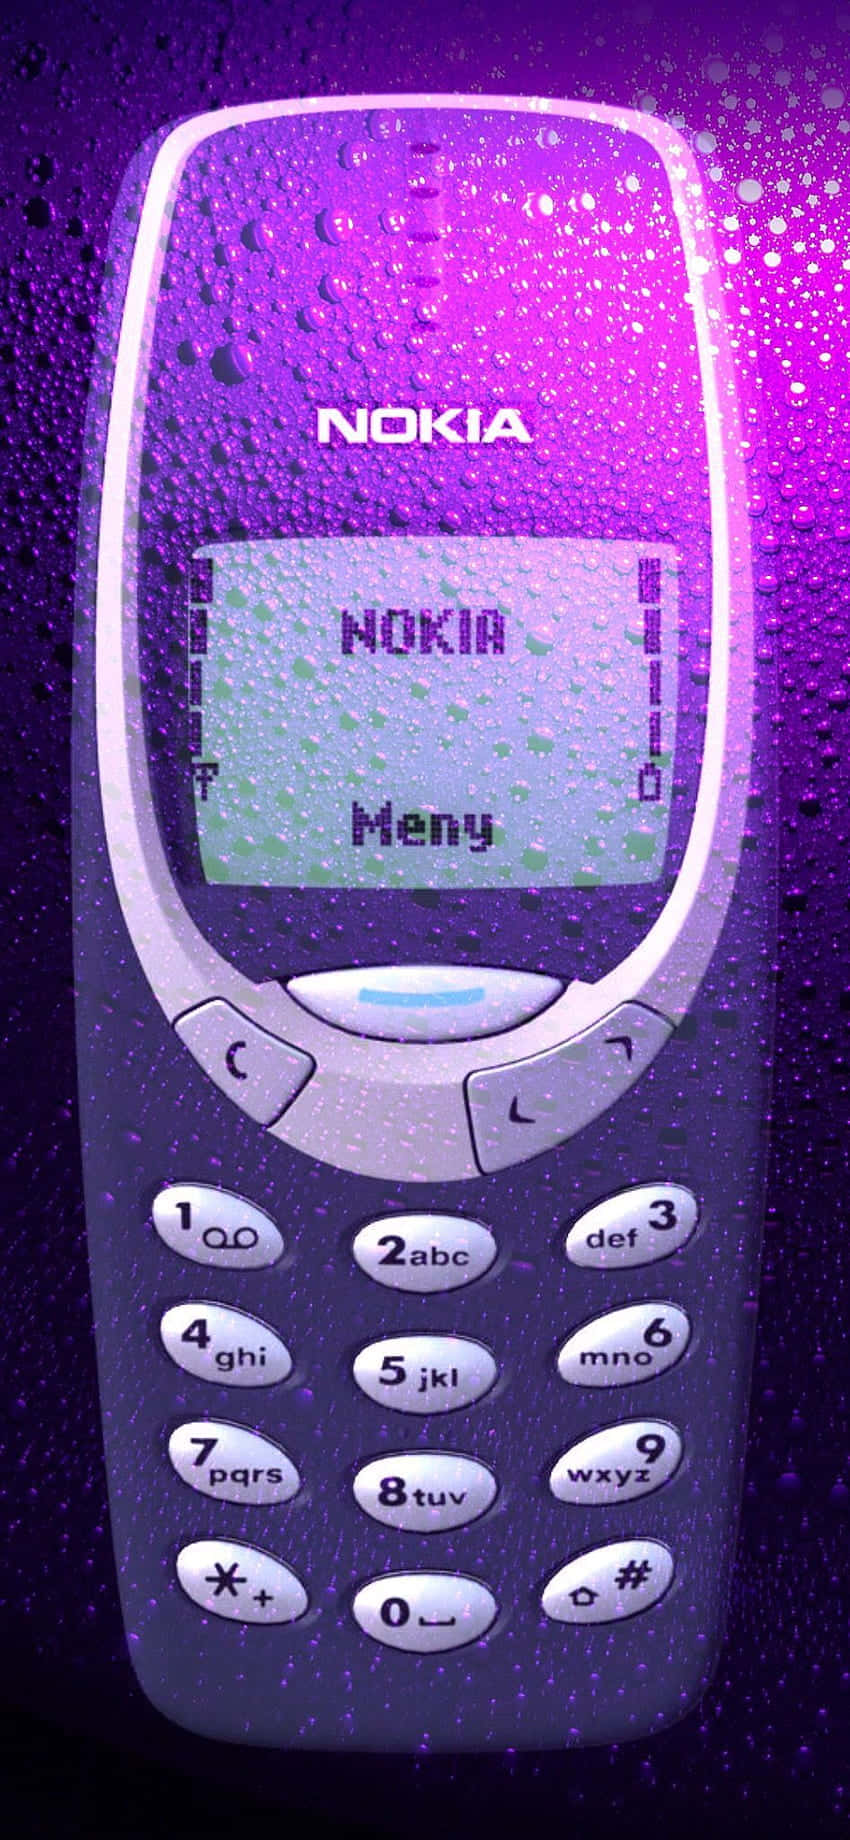 Explorainfinitas Posibilidades Con Nokia 850